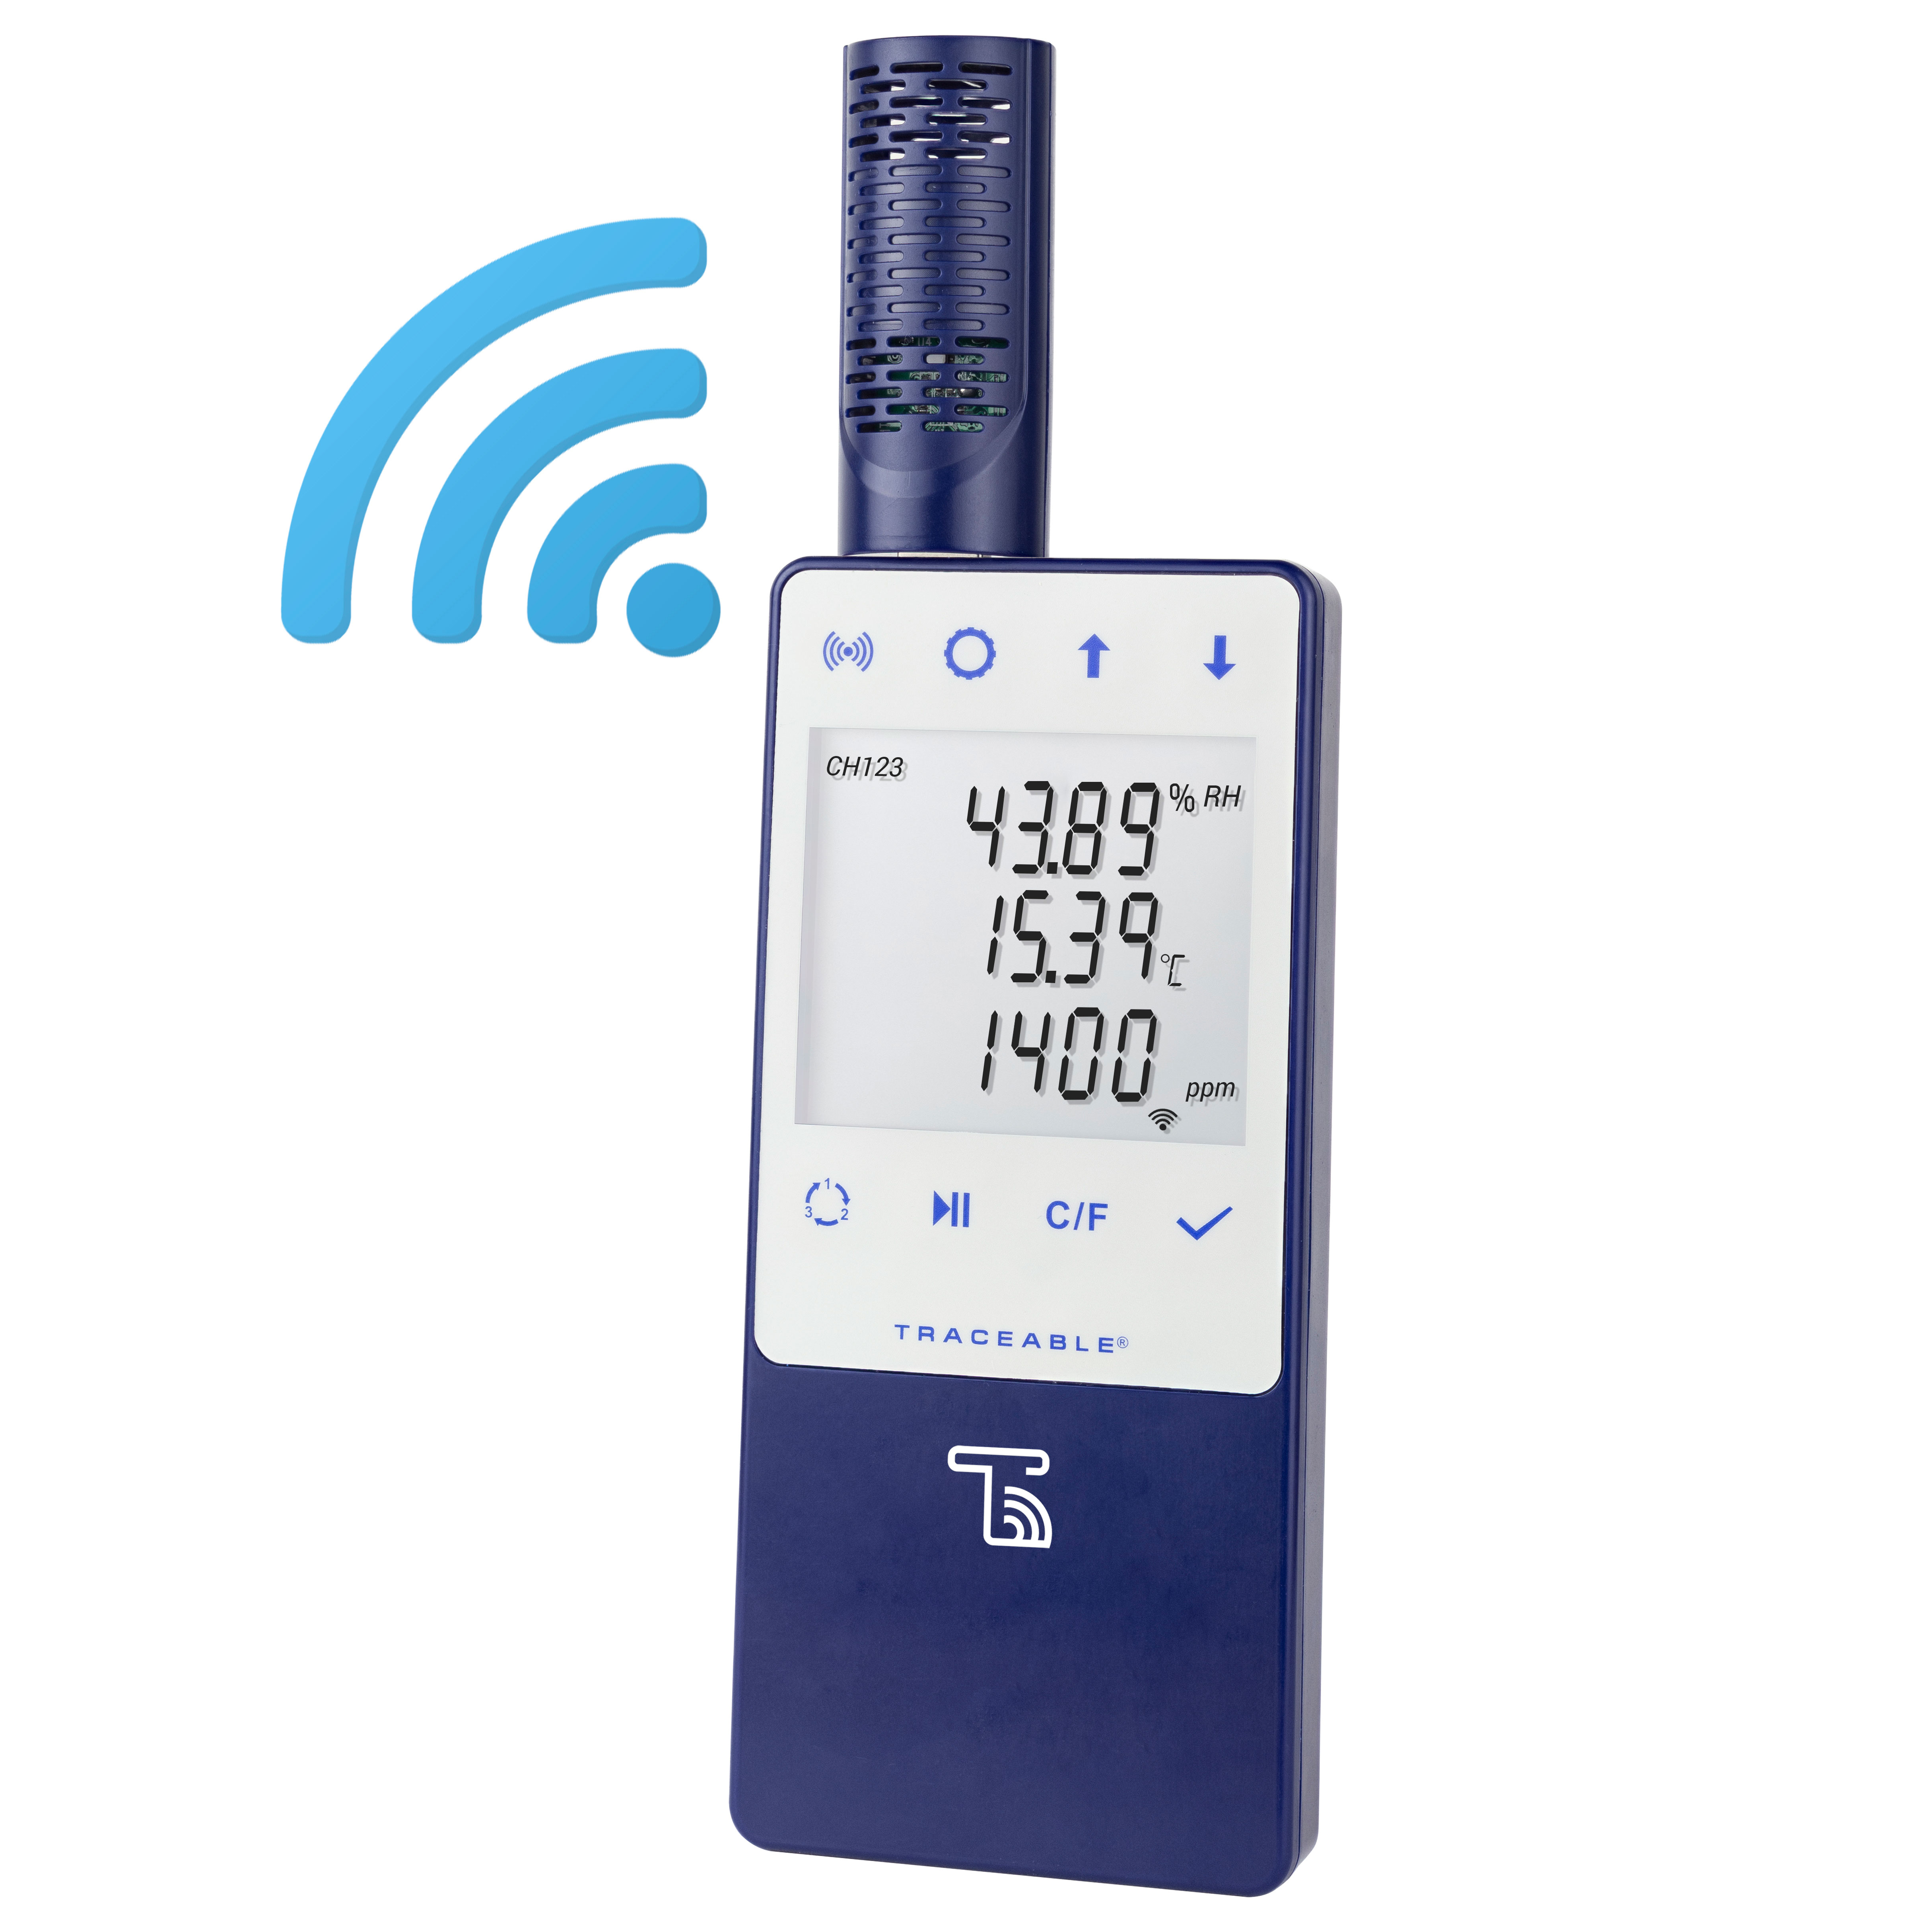 Medidores digitales de CO2, temperatura y humedad con registro de datos, conectados mediante Wi-Fi TraceableLIVE® con alertas en tiempo real